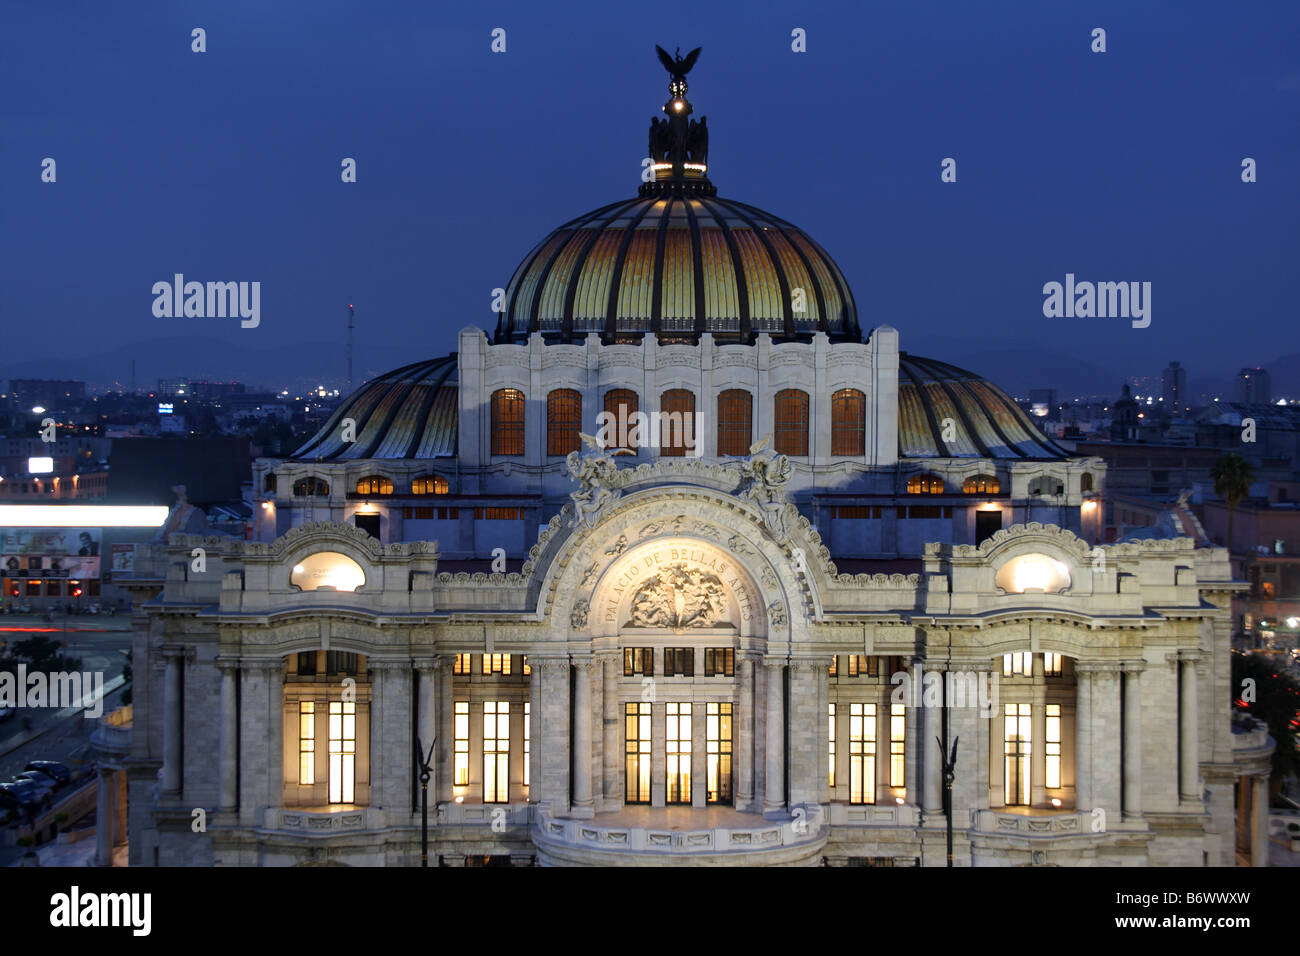 Mexiko, Mexiko-Stadt. Palacio de Bellas Artes ("Palast der schönen Künste") ist das wichtigste Opernhaus von Mexiko-Stadt Stockfoto